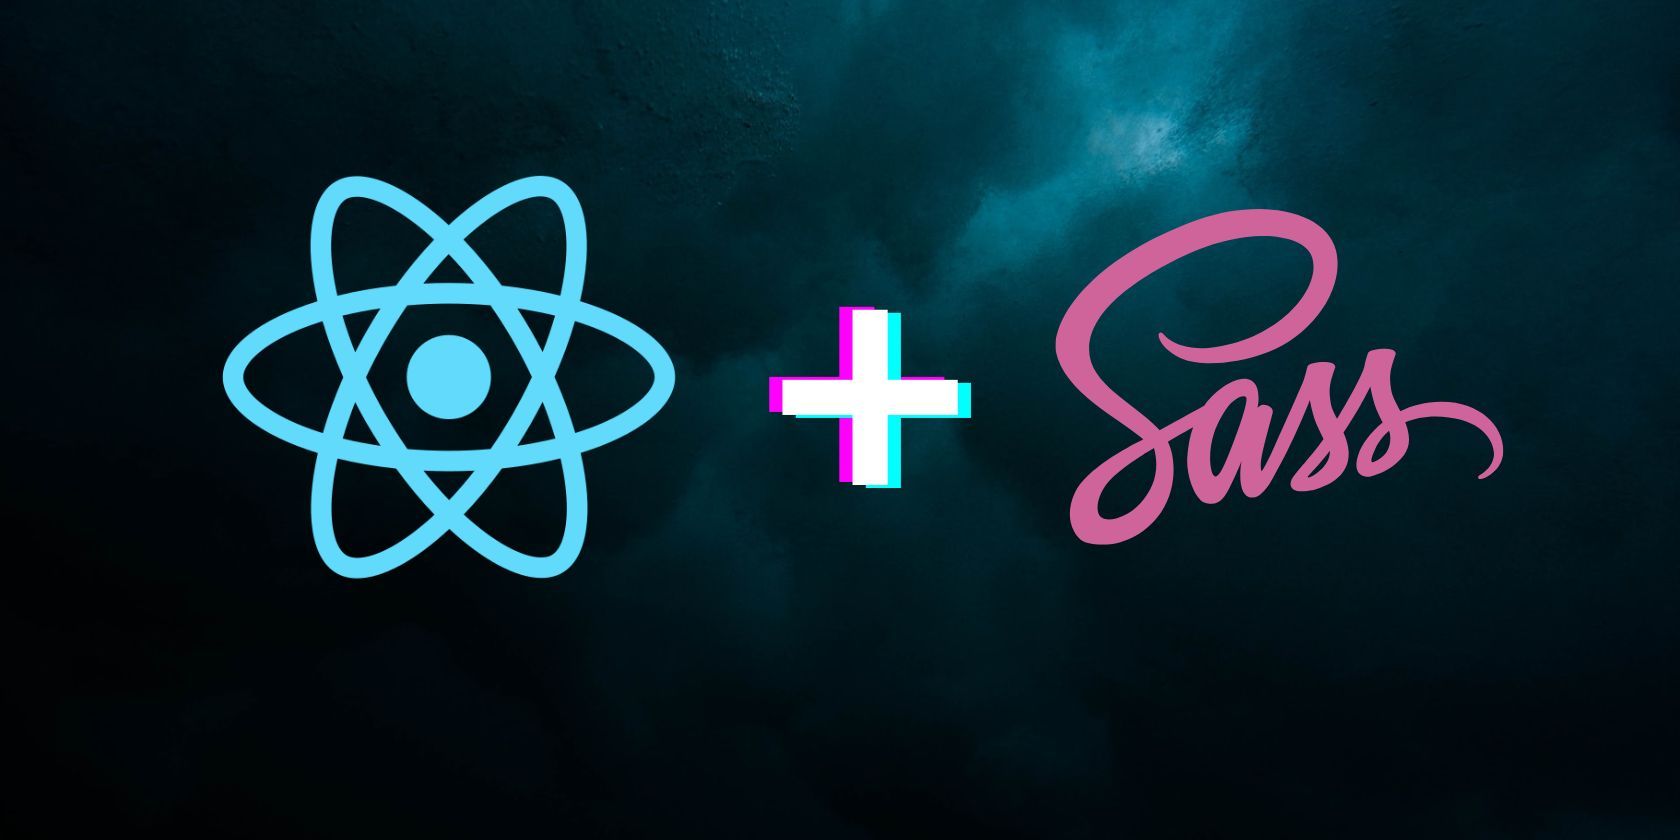 A logo of React.js and Sass